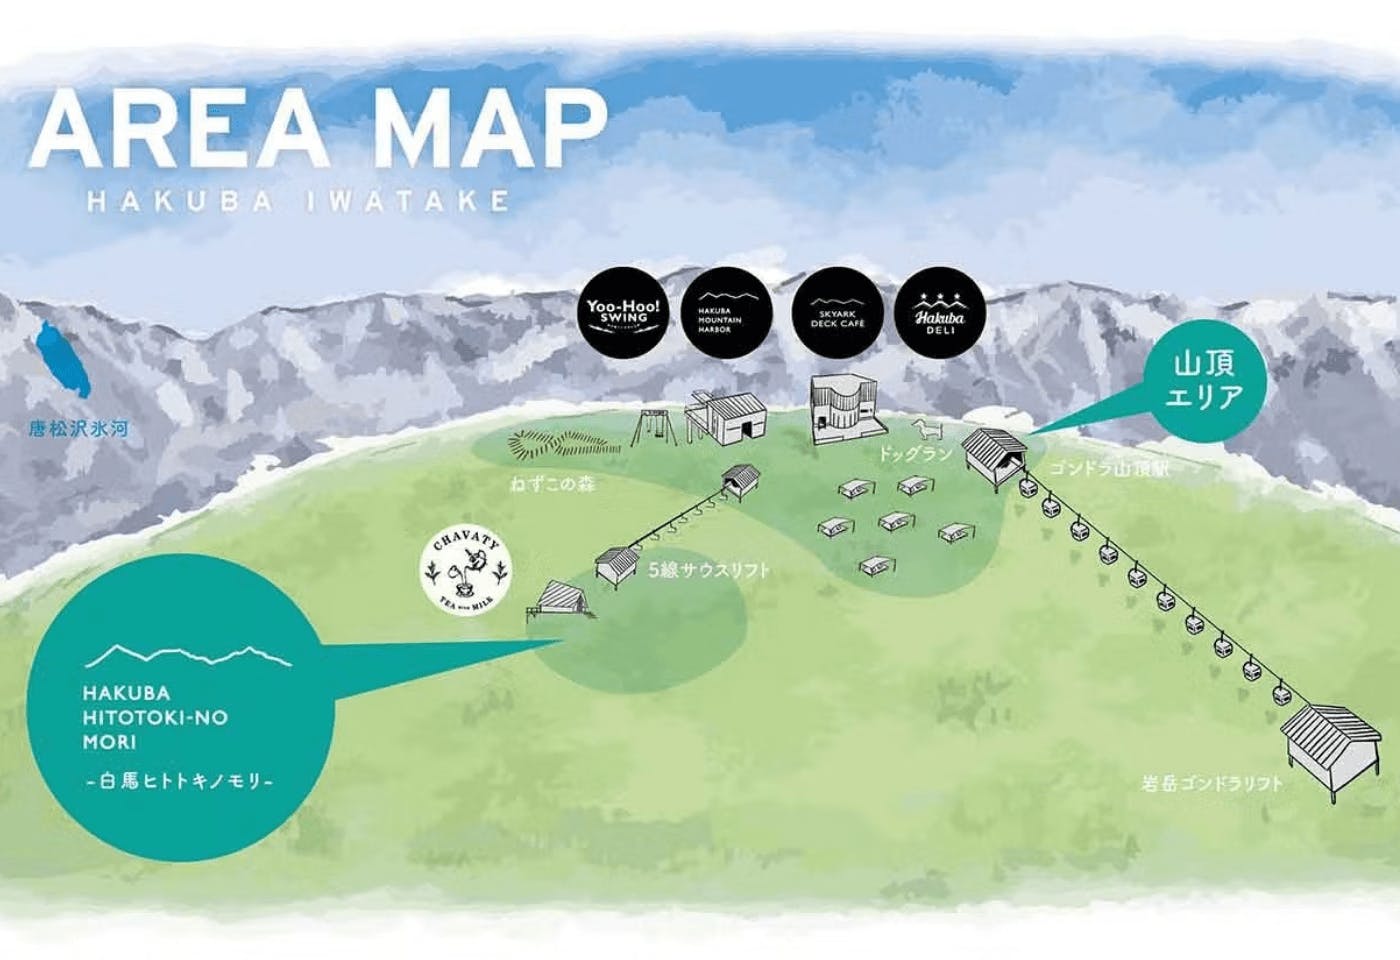 白馬岩岳マウンテンリゾートのエリアマップ